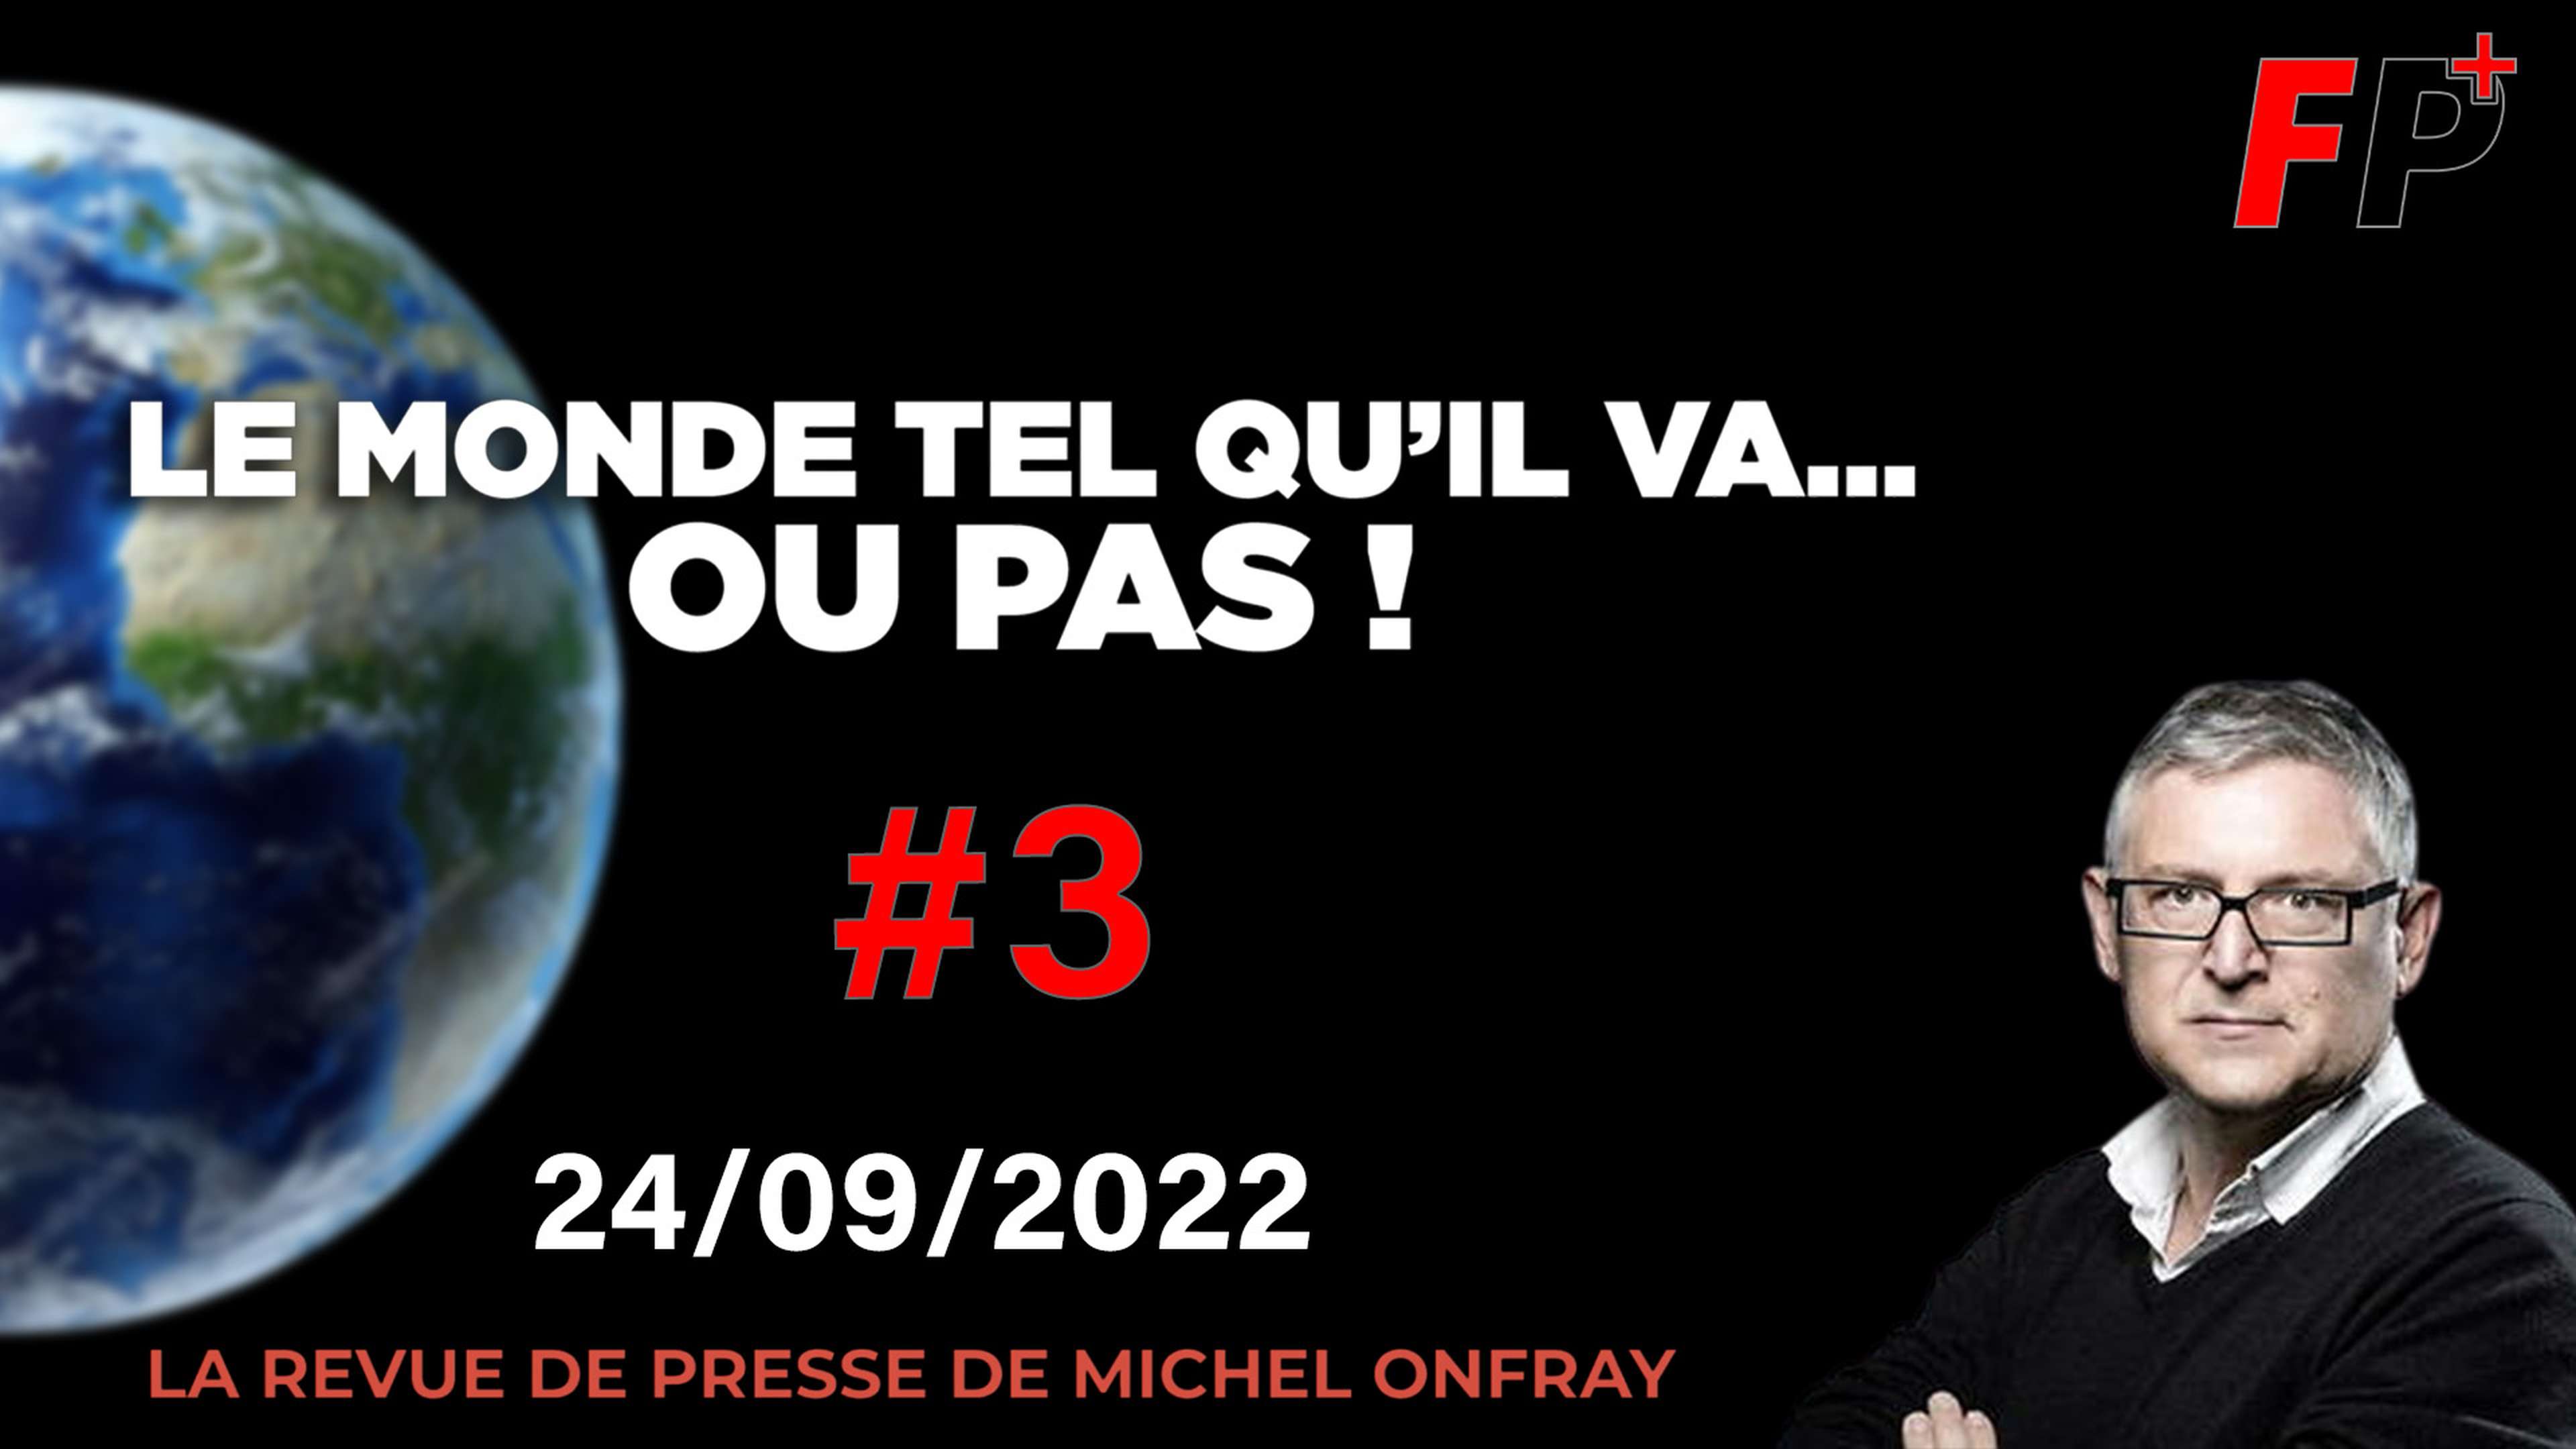 Le monde tel qu'il va… ou pas ! – la revue de presse de Michel Onfray (#3)